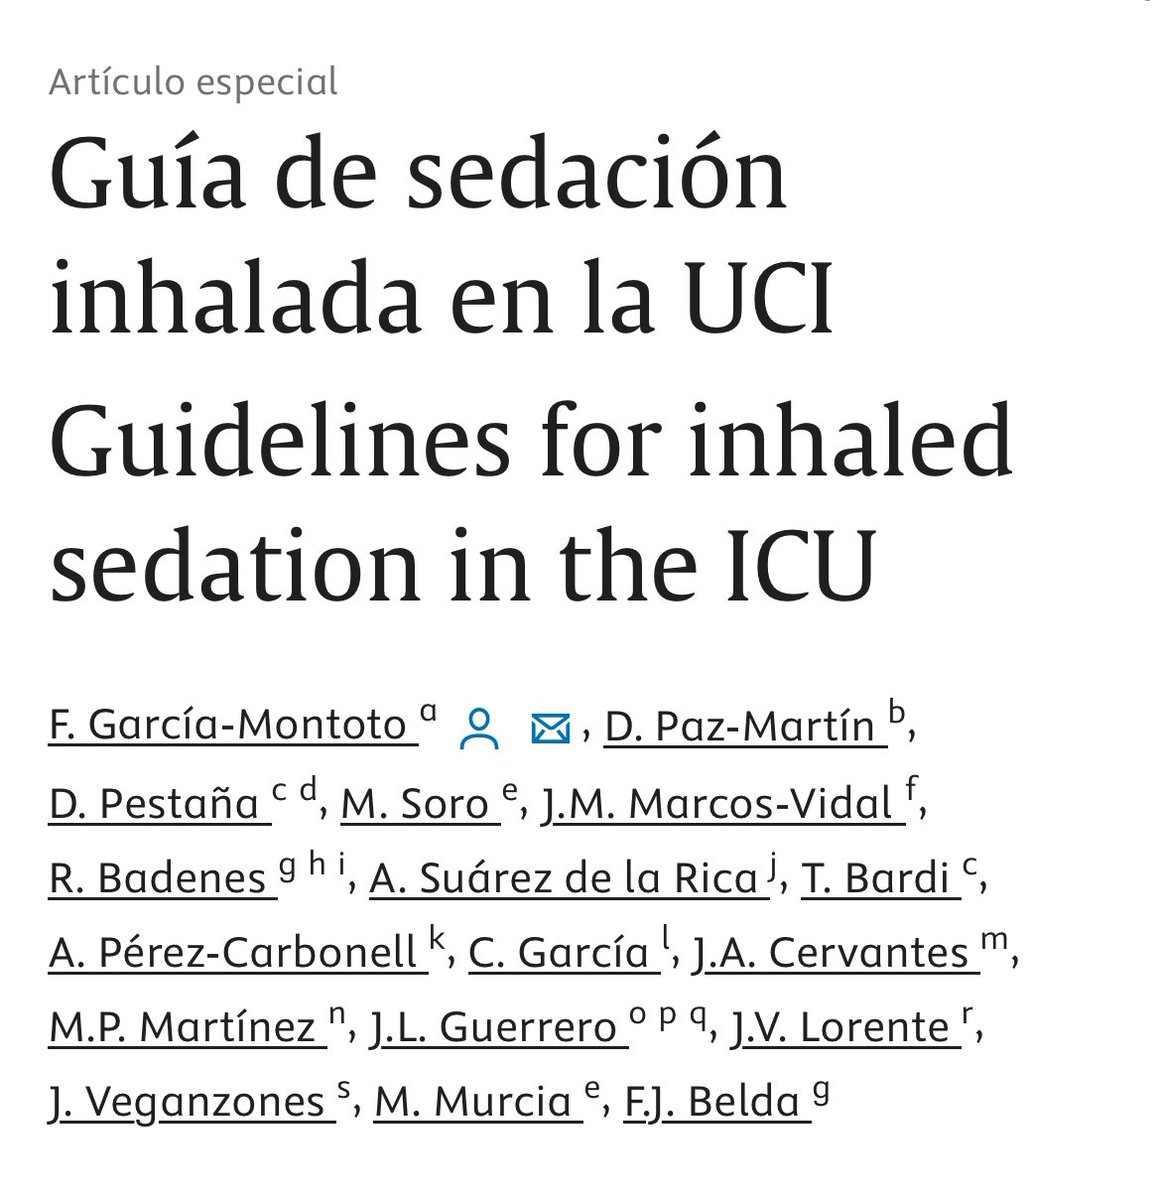 🆕 #EspecialREDAR #ArticleInPress 

🟡‘Guía de sedación inhalada en la UCI’

🔗 sciencedirect.com/science/articl…